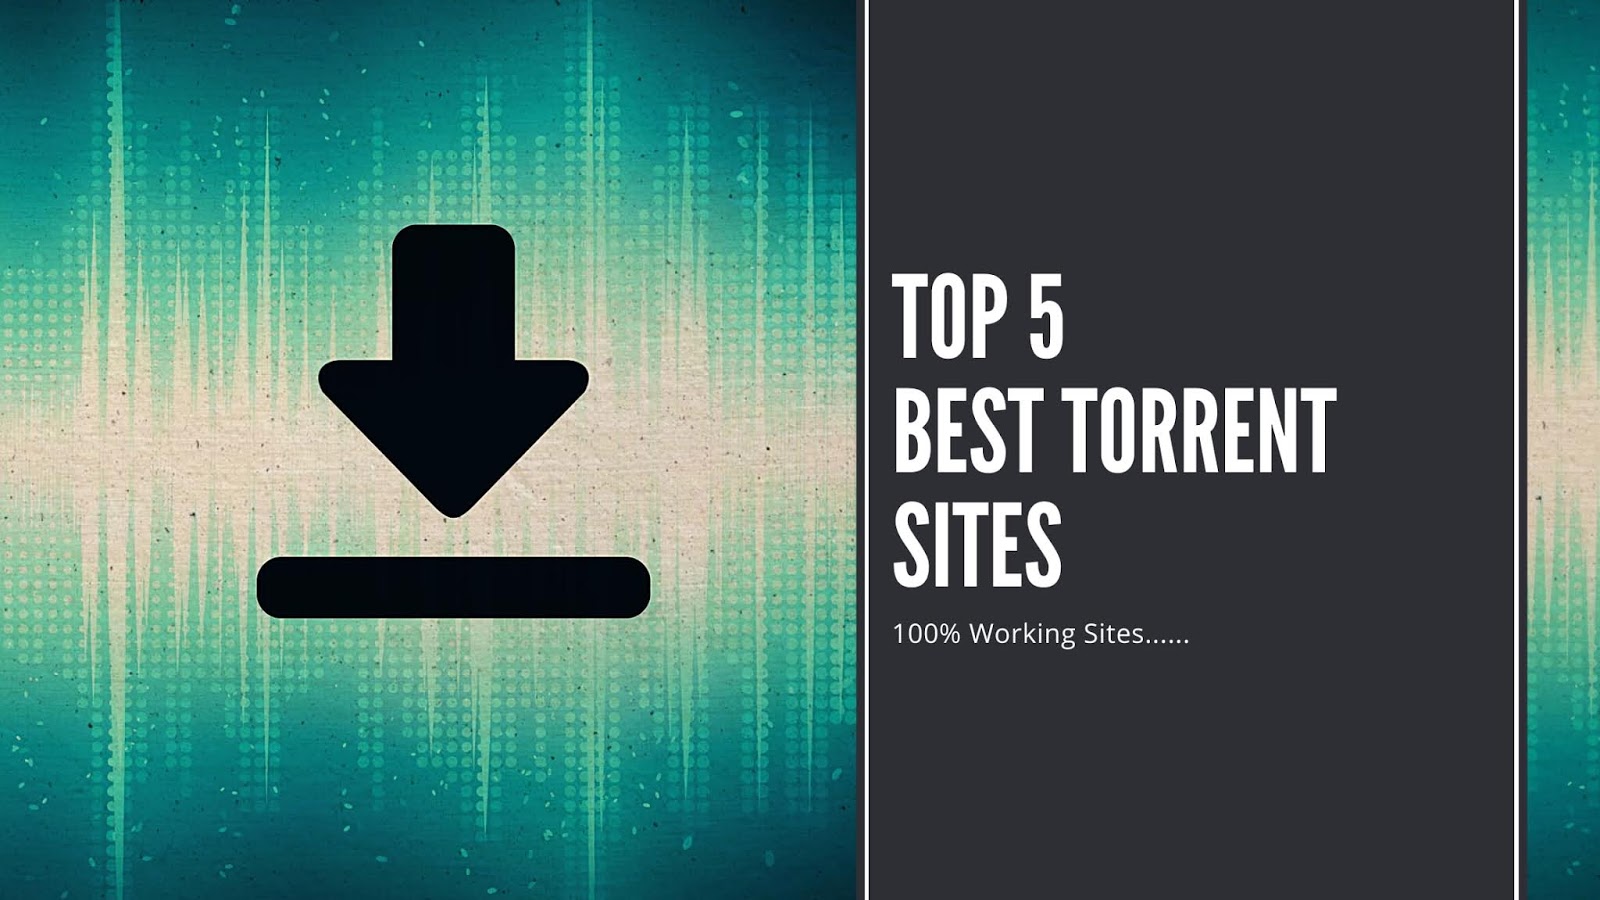 Top 5 Best Torrent Sites.